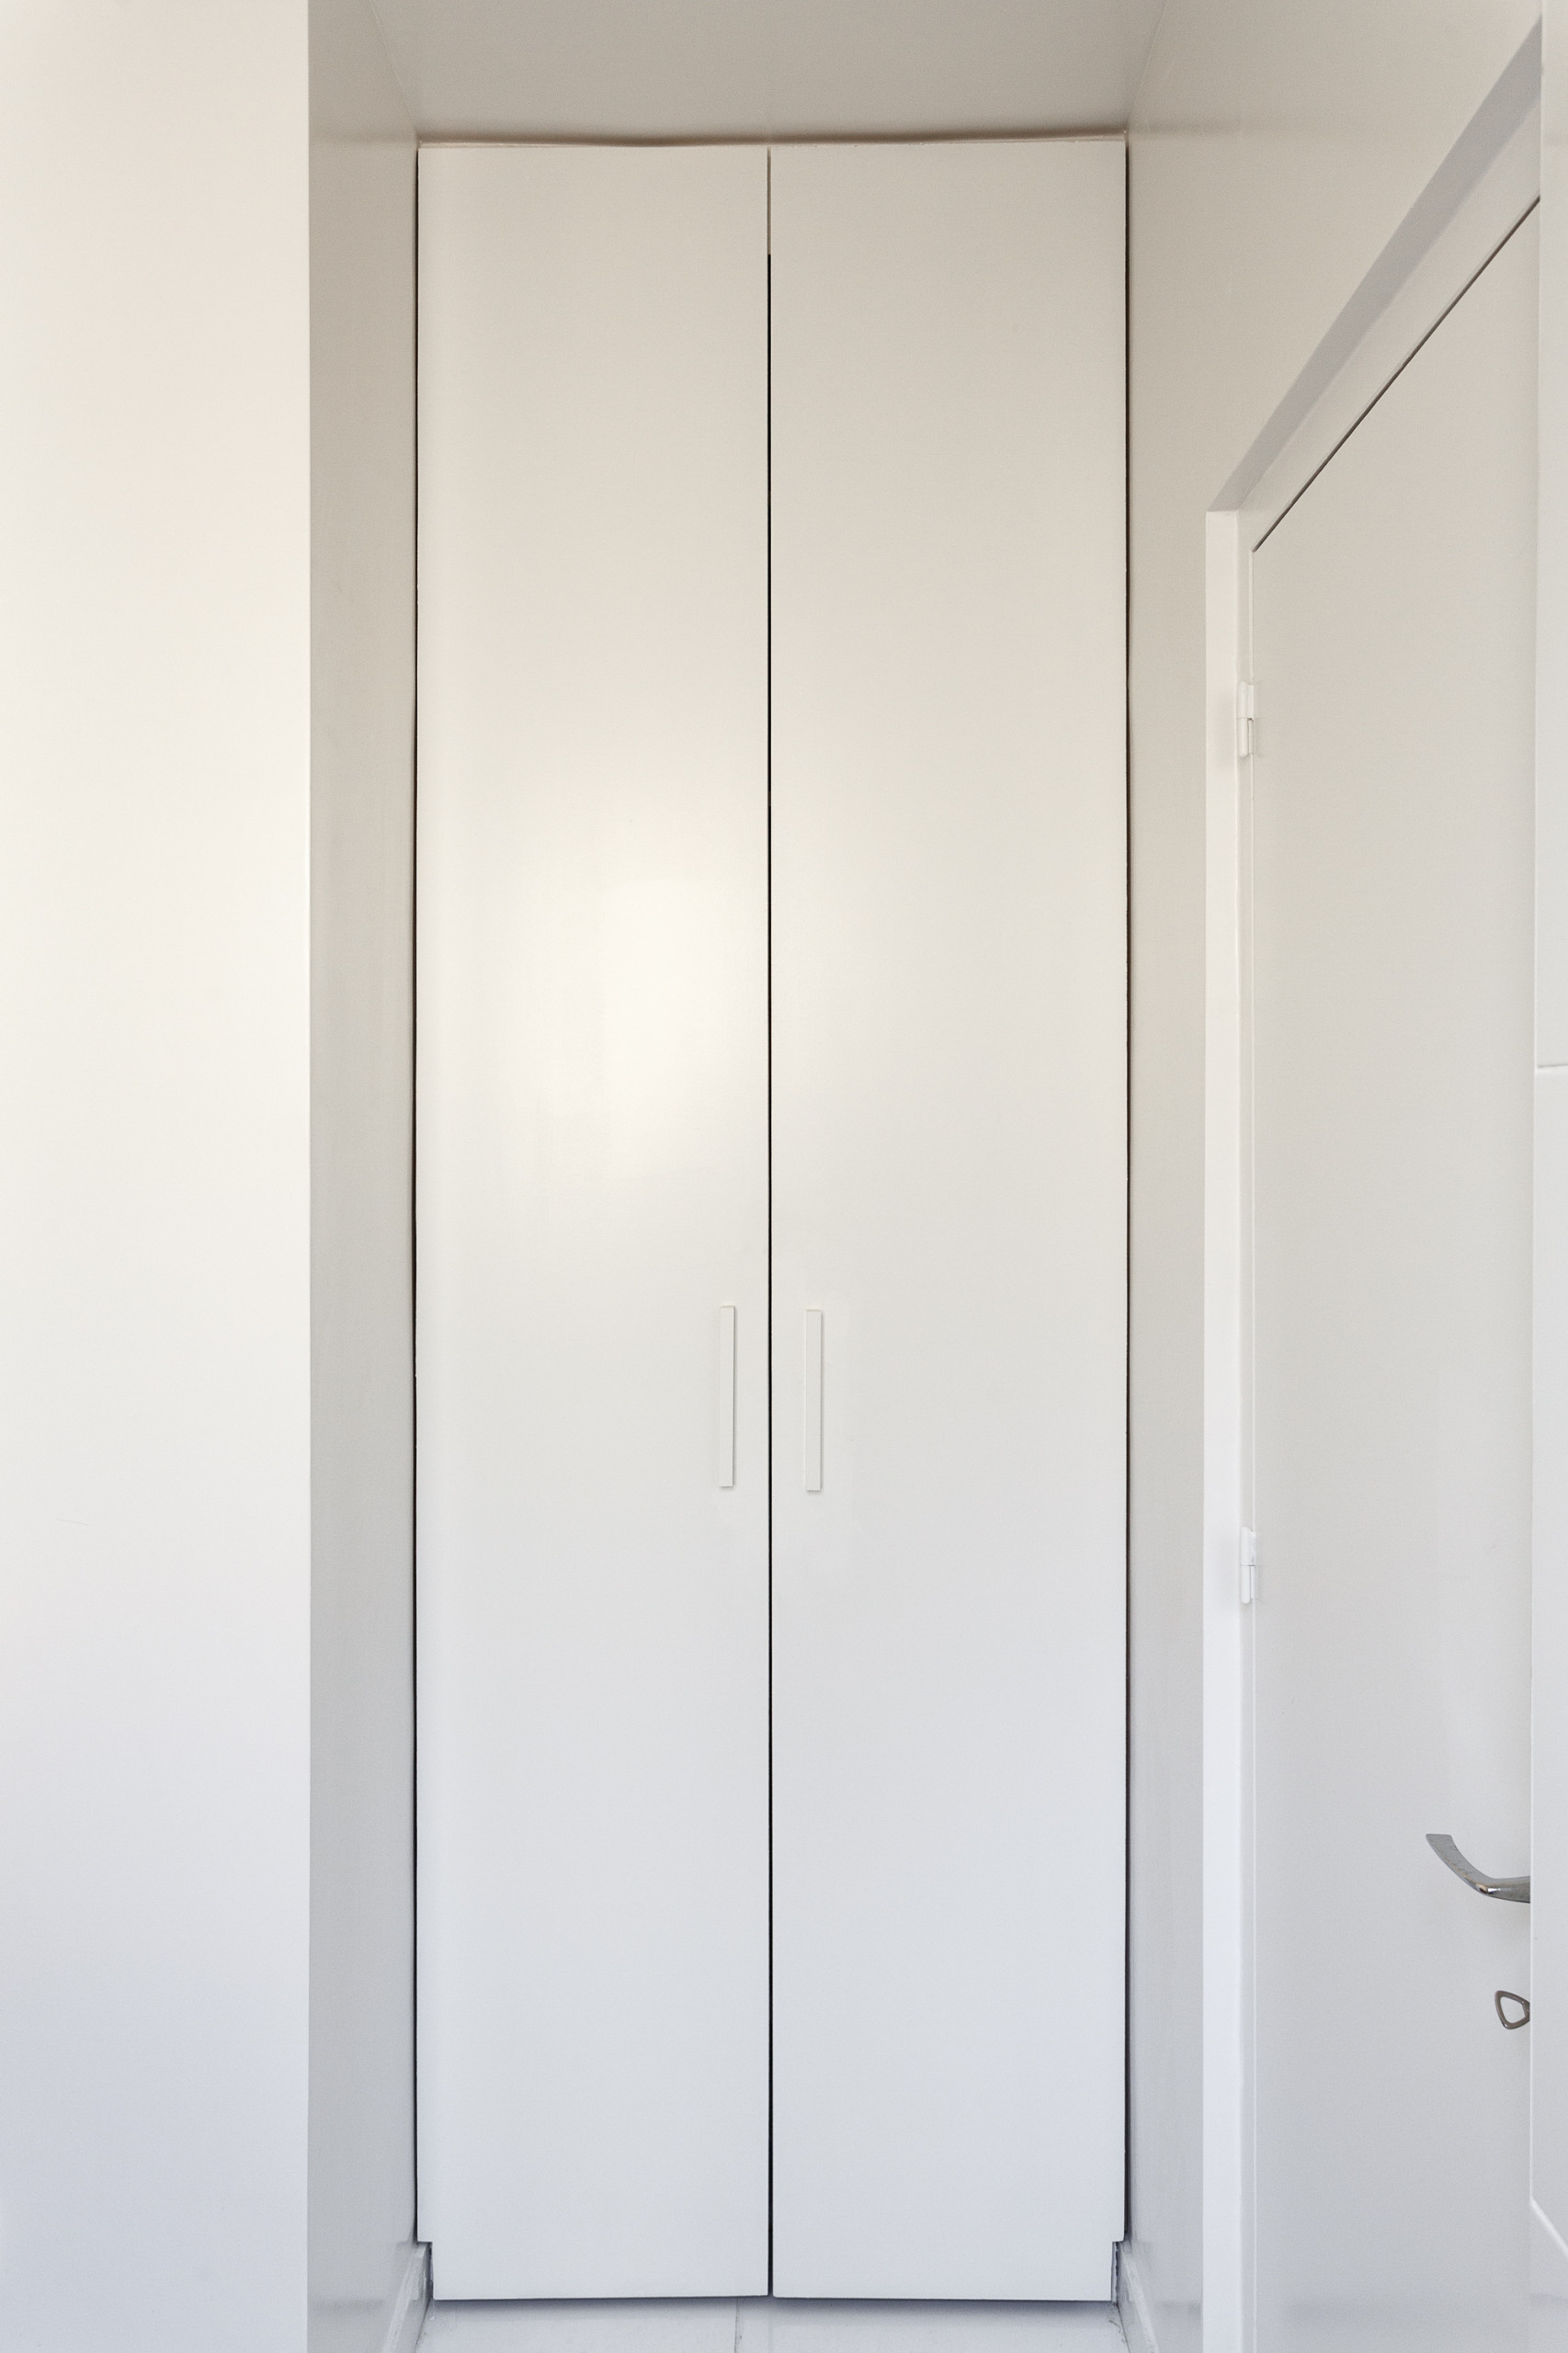 Projet Cambronne - Une salle de bains contemporaine en blanc et bois